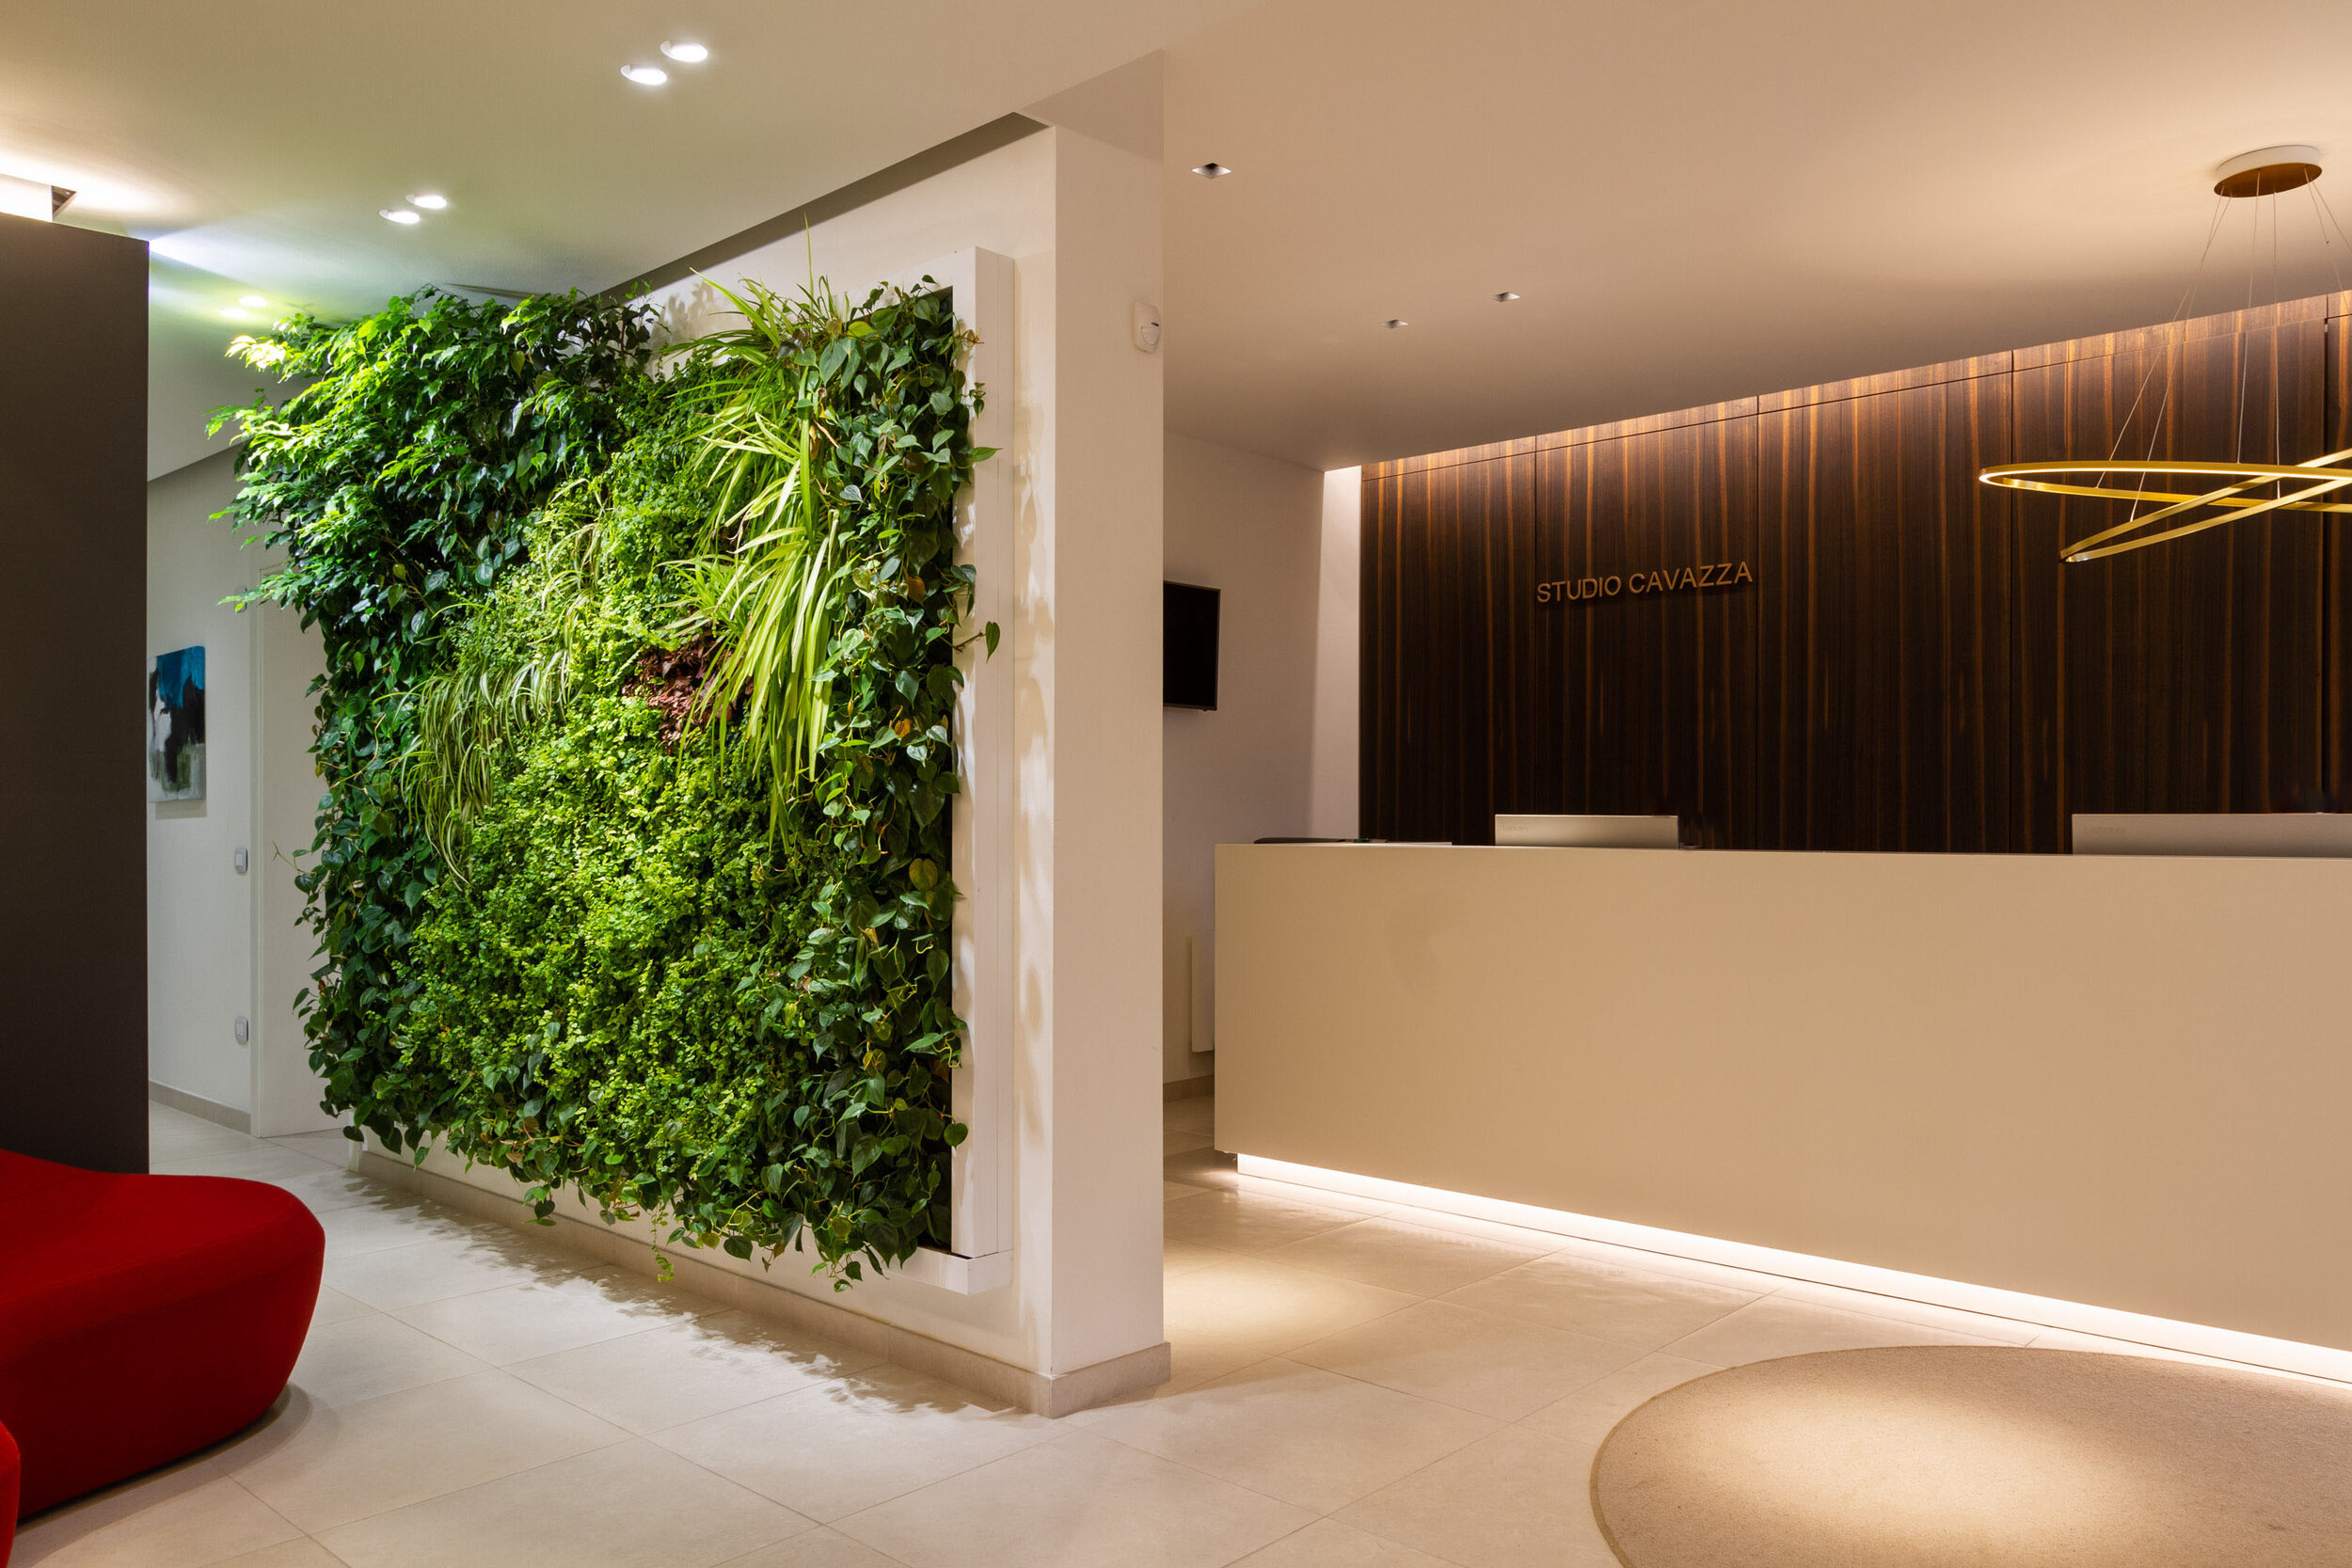 studio-cavazza-garden-vertical-wall-green-sundar-italia-001.JPG